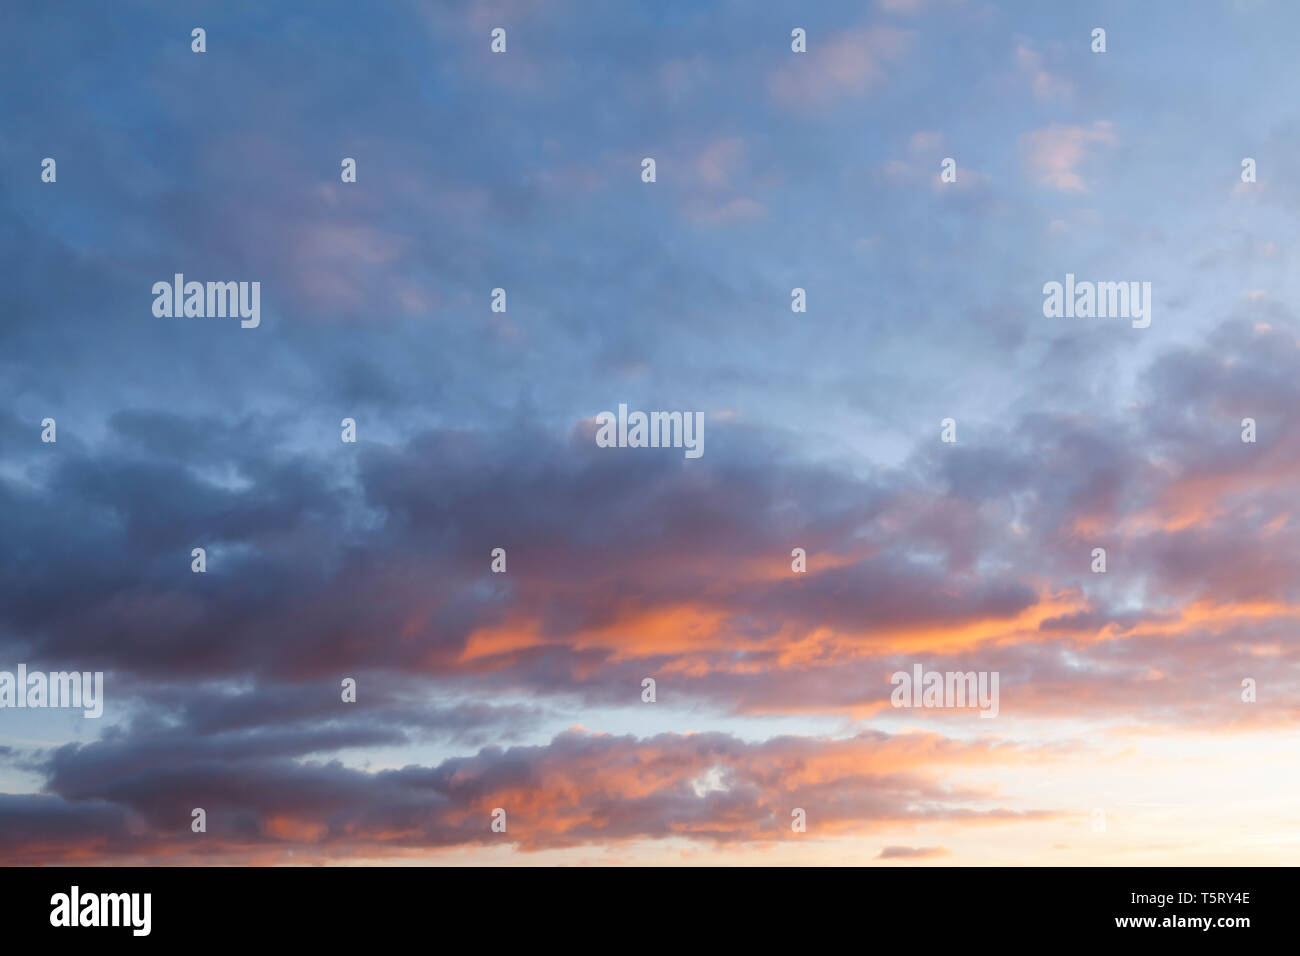 Rosa sonnenuntergang himmel mit wunderschönen Wolken. Natur cloudscape Hintergrund Stockfoto